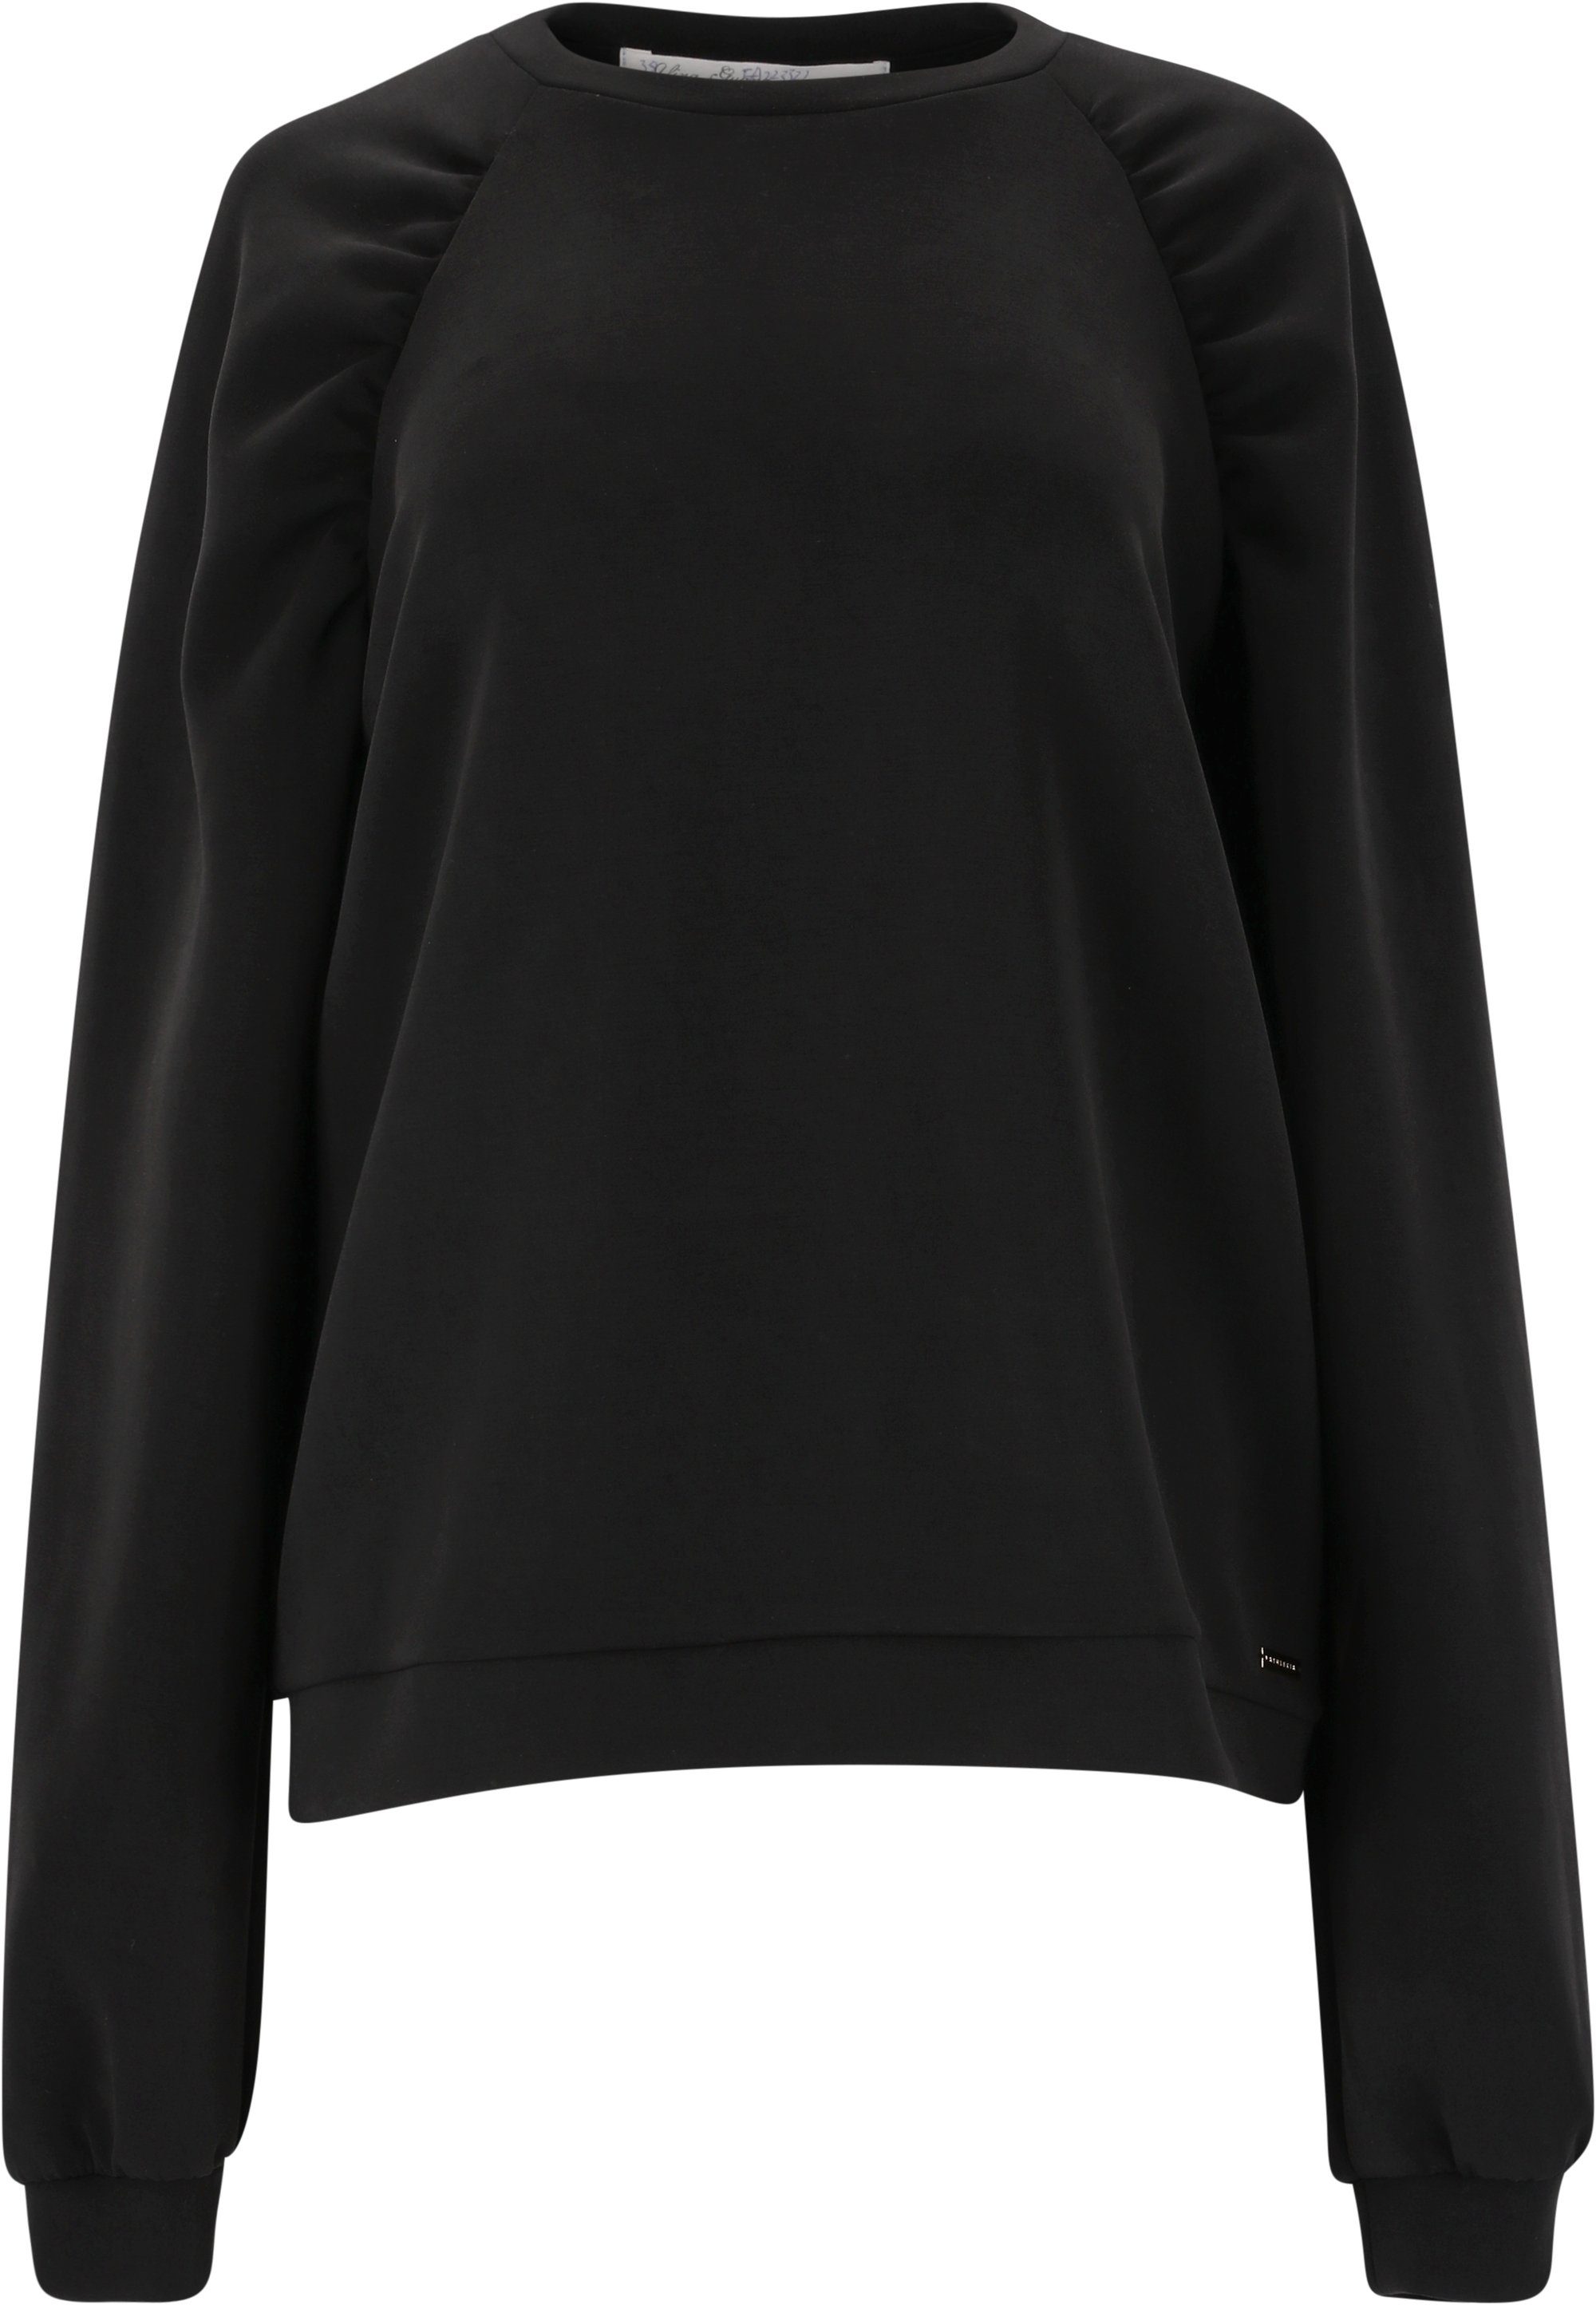 ATHLECIA Sweatshirt Jillnana in schwarz schlichtem Design